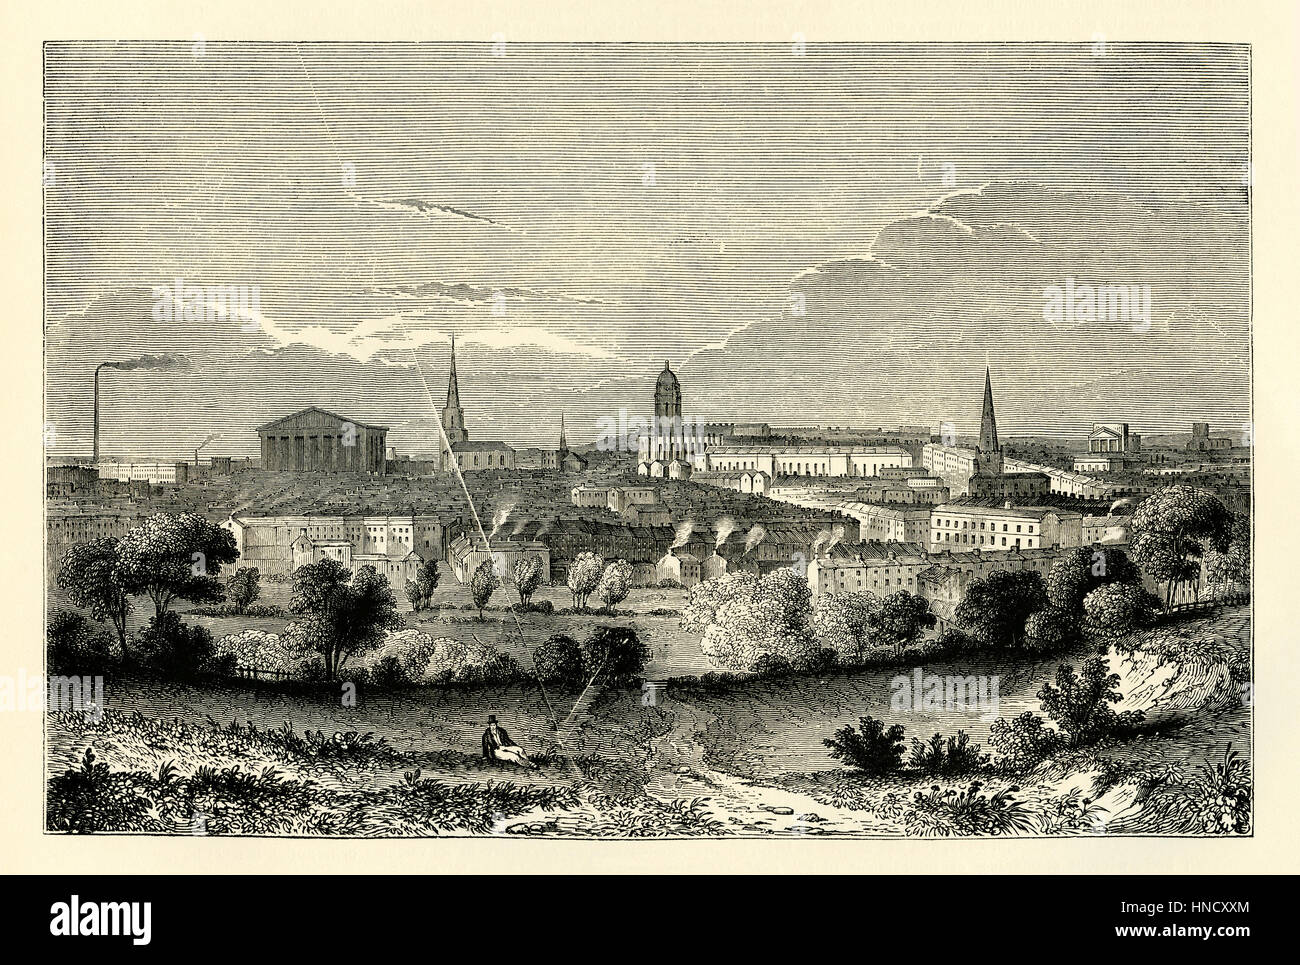 Birmingham, West Midlands, England – eine alte Gravur um 1840. Eine Stadt im mittleren Alter, Birmingham wuchs schnell in die industrielle Revolution Stockfoto